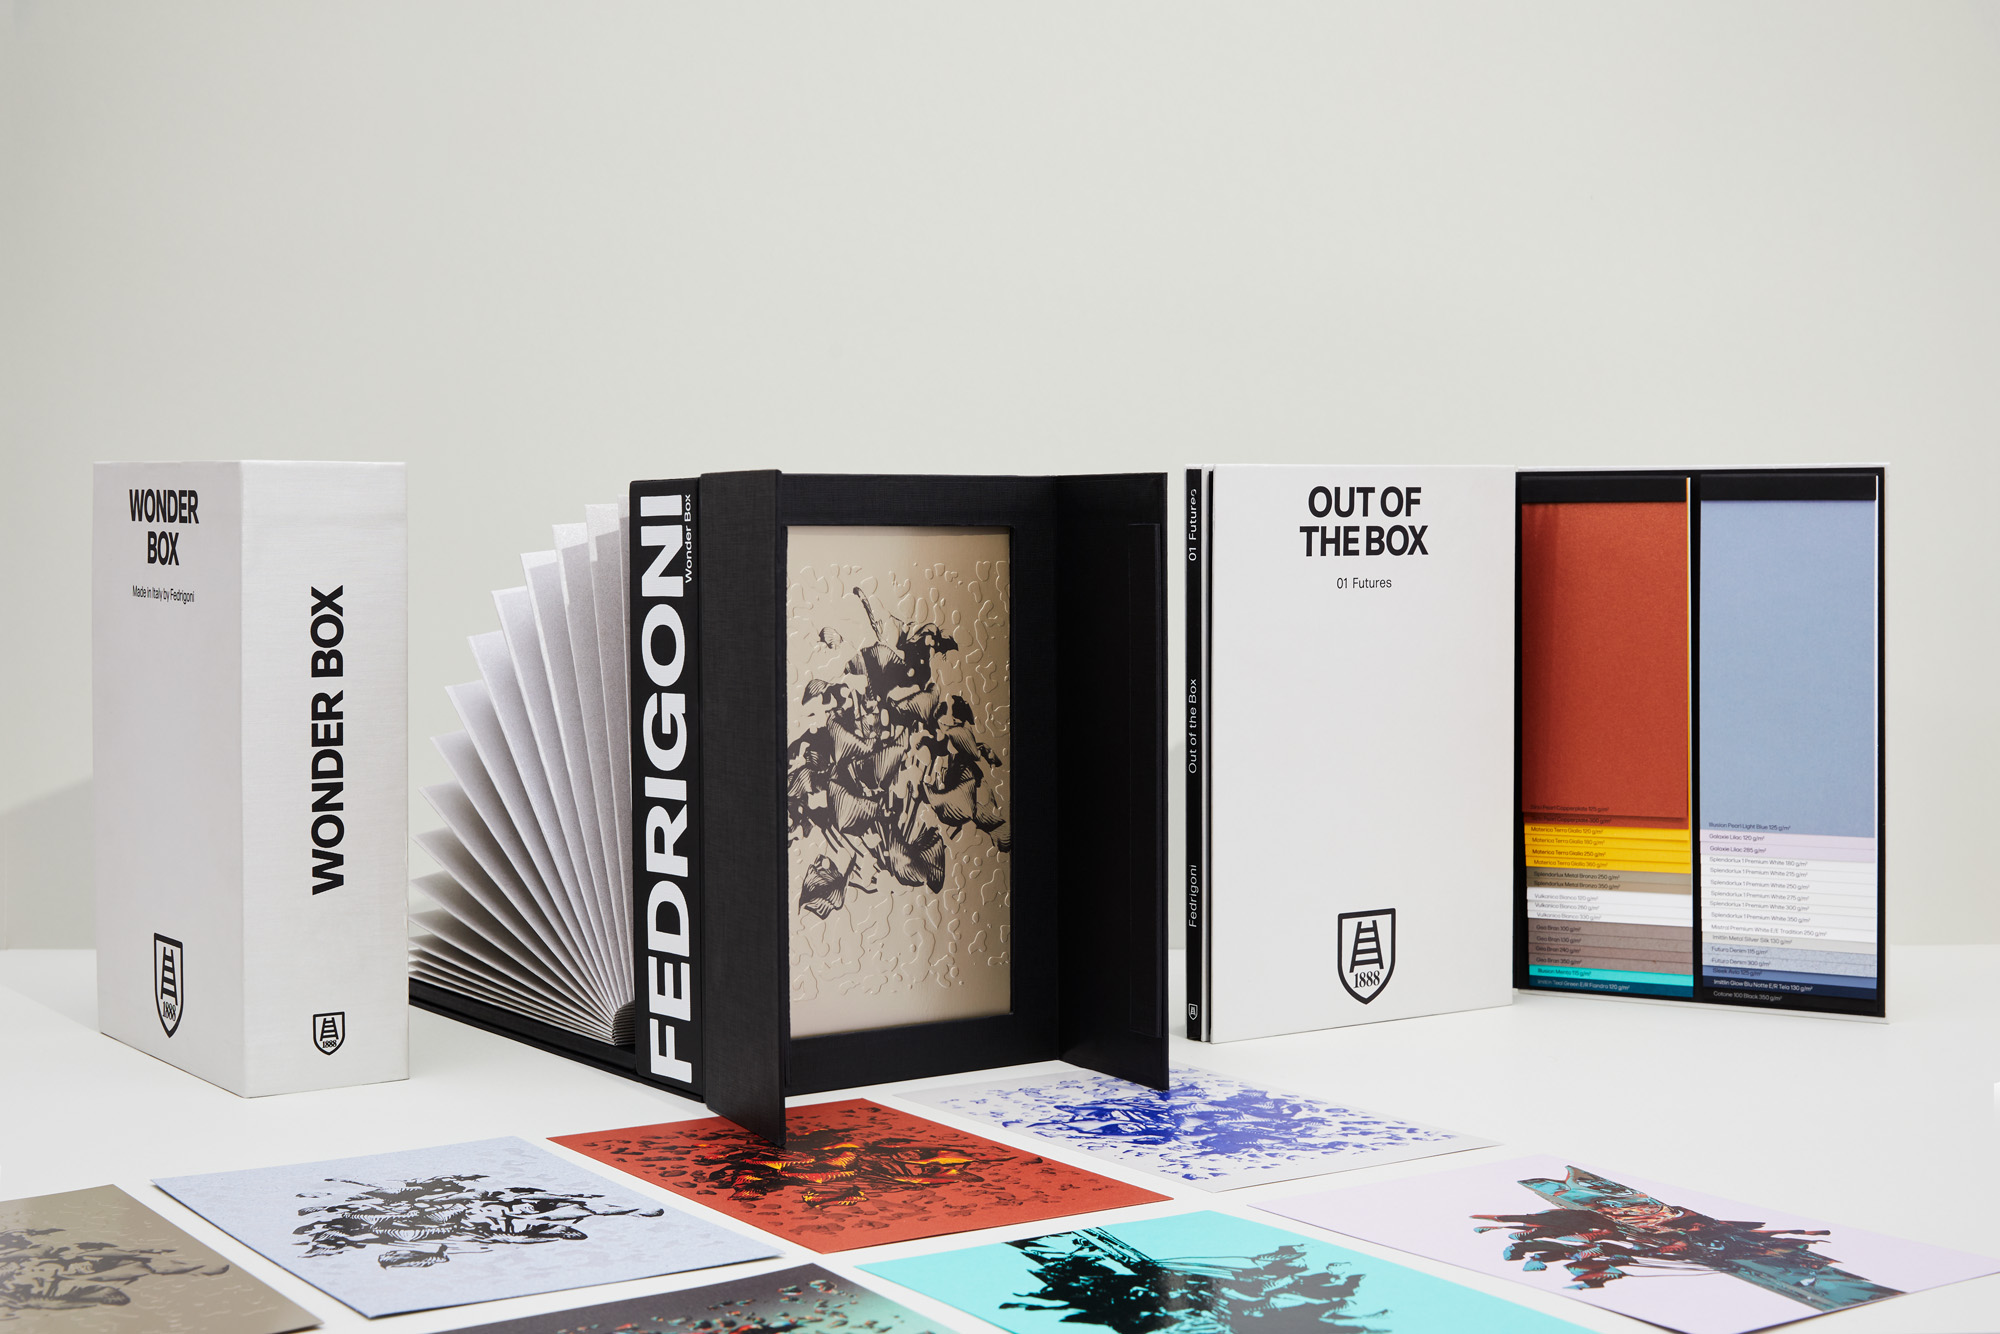 Entdecke Futures, eine Sammlung von Papieren, die in Out of the Box und Wonder Box erschienen sind